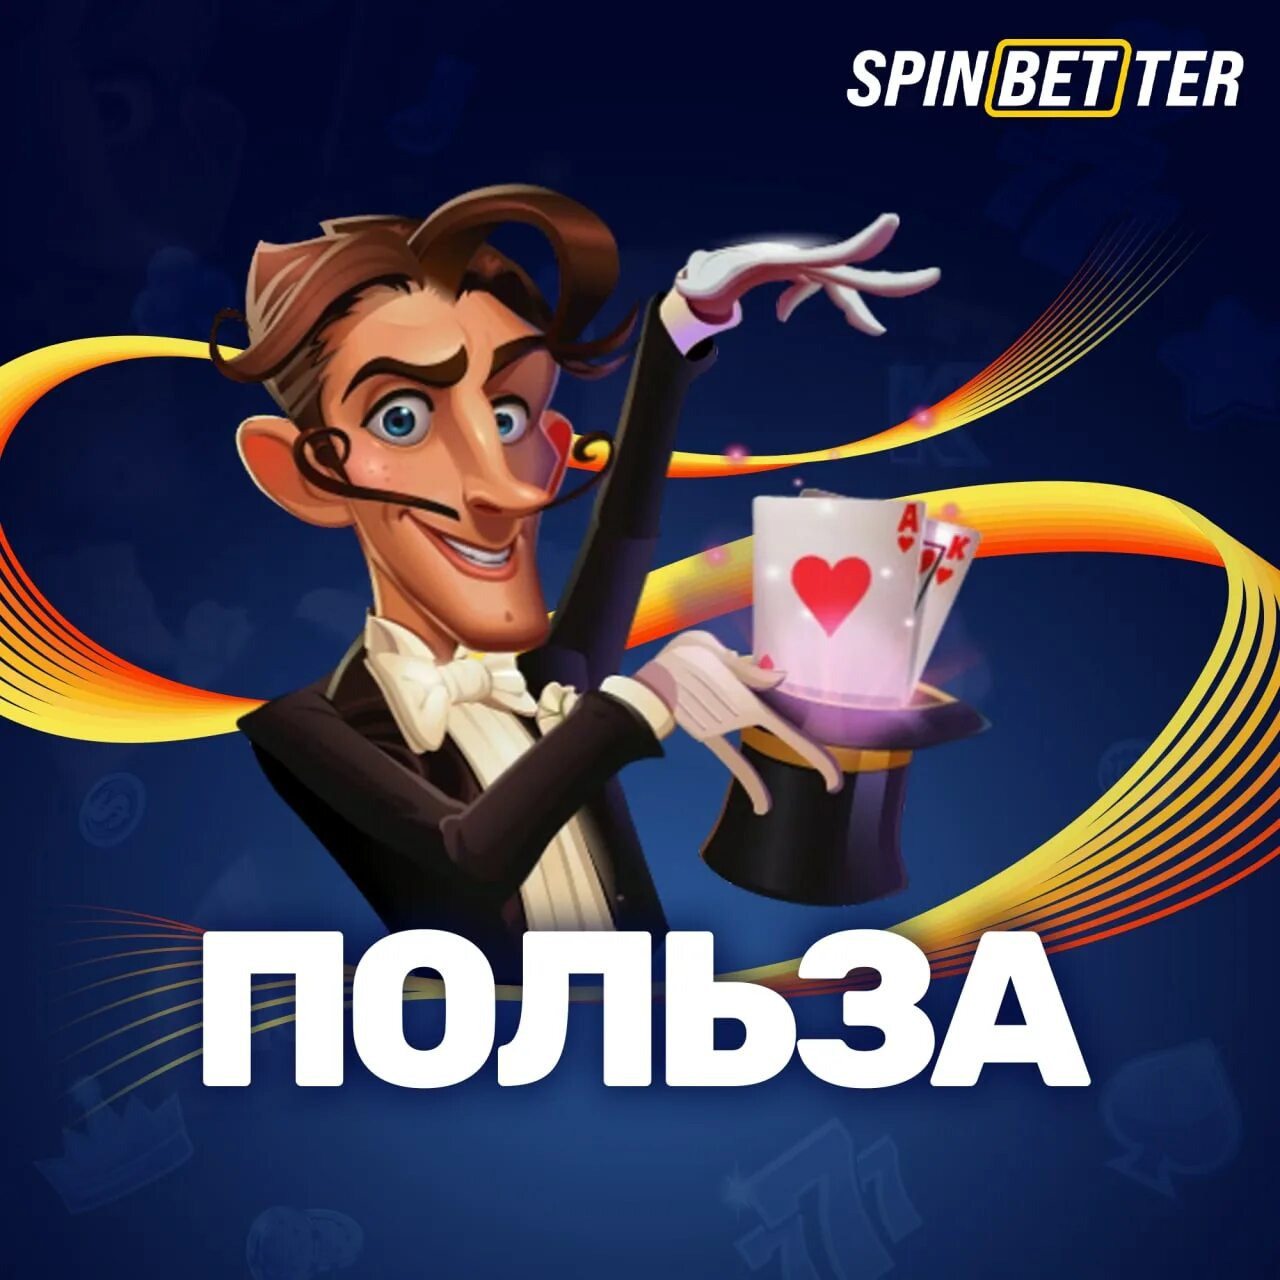 Spinbetter casino buzz